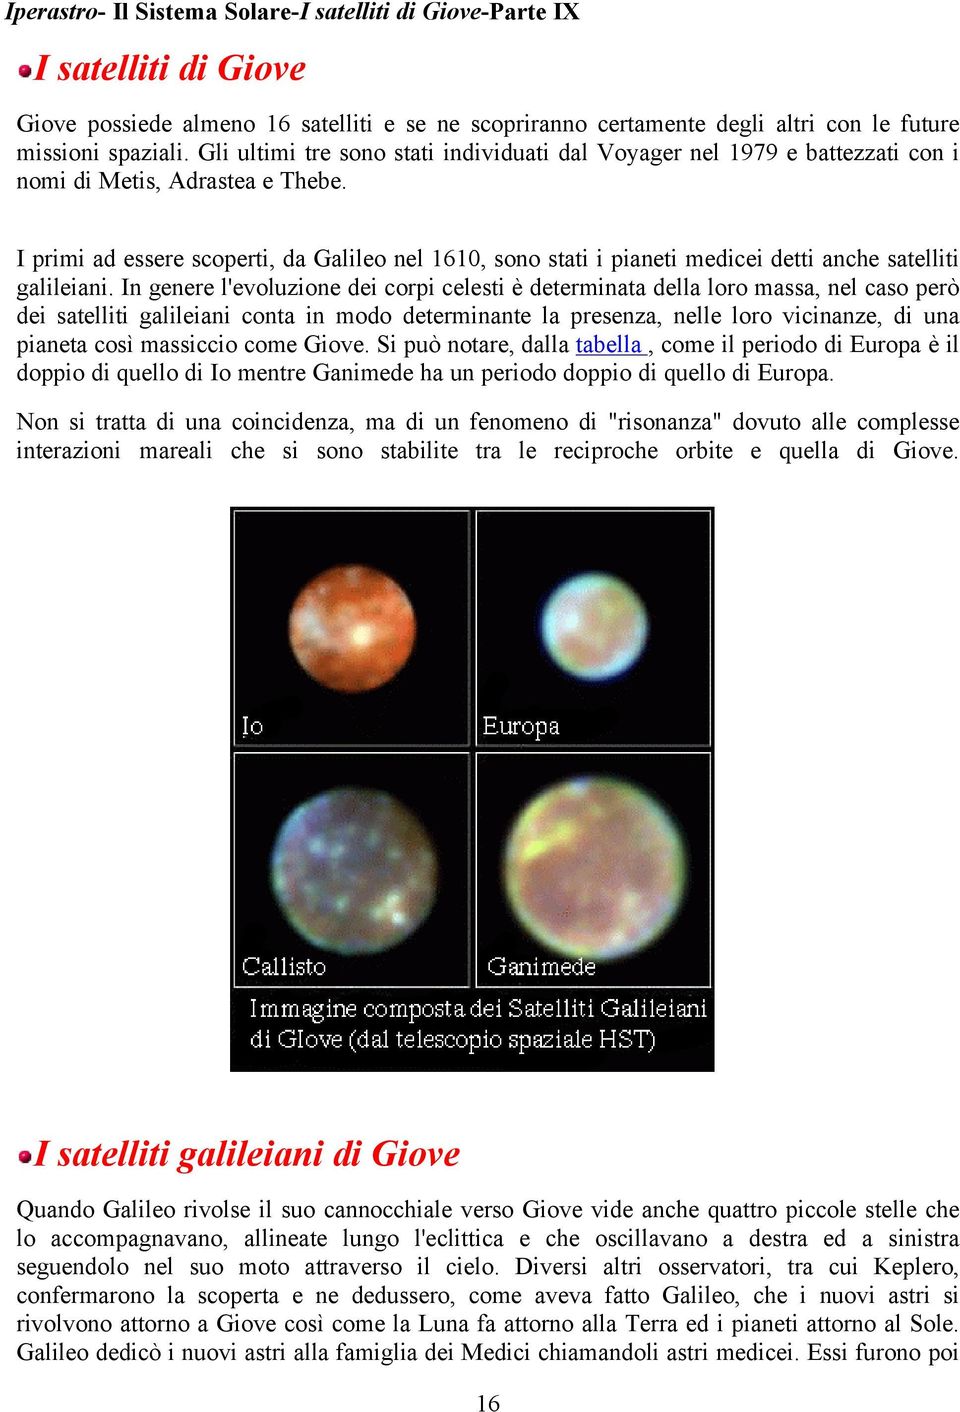 I primi ad essere scoperti, da Galileo nel 1610, sono stati i pianeti medicei detti anche satelliti galileiani.